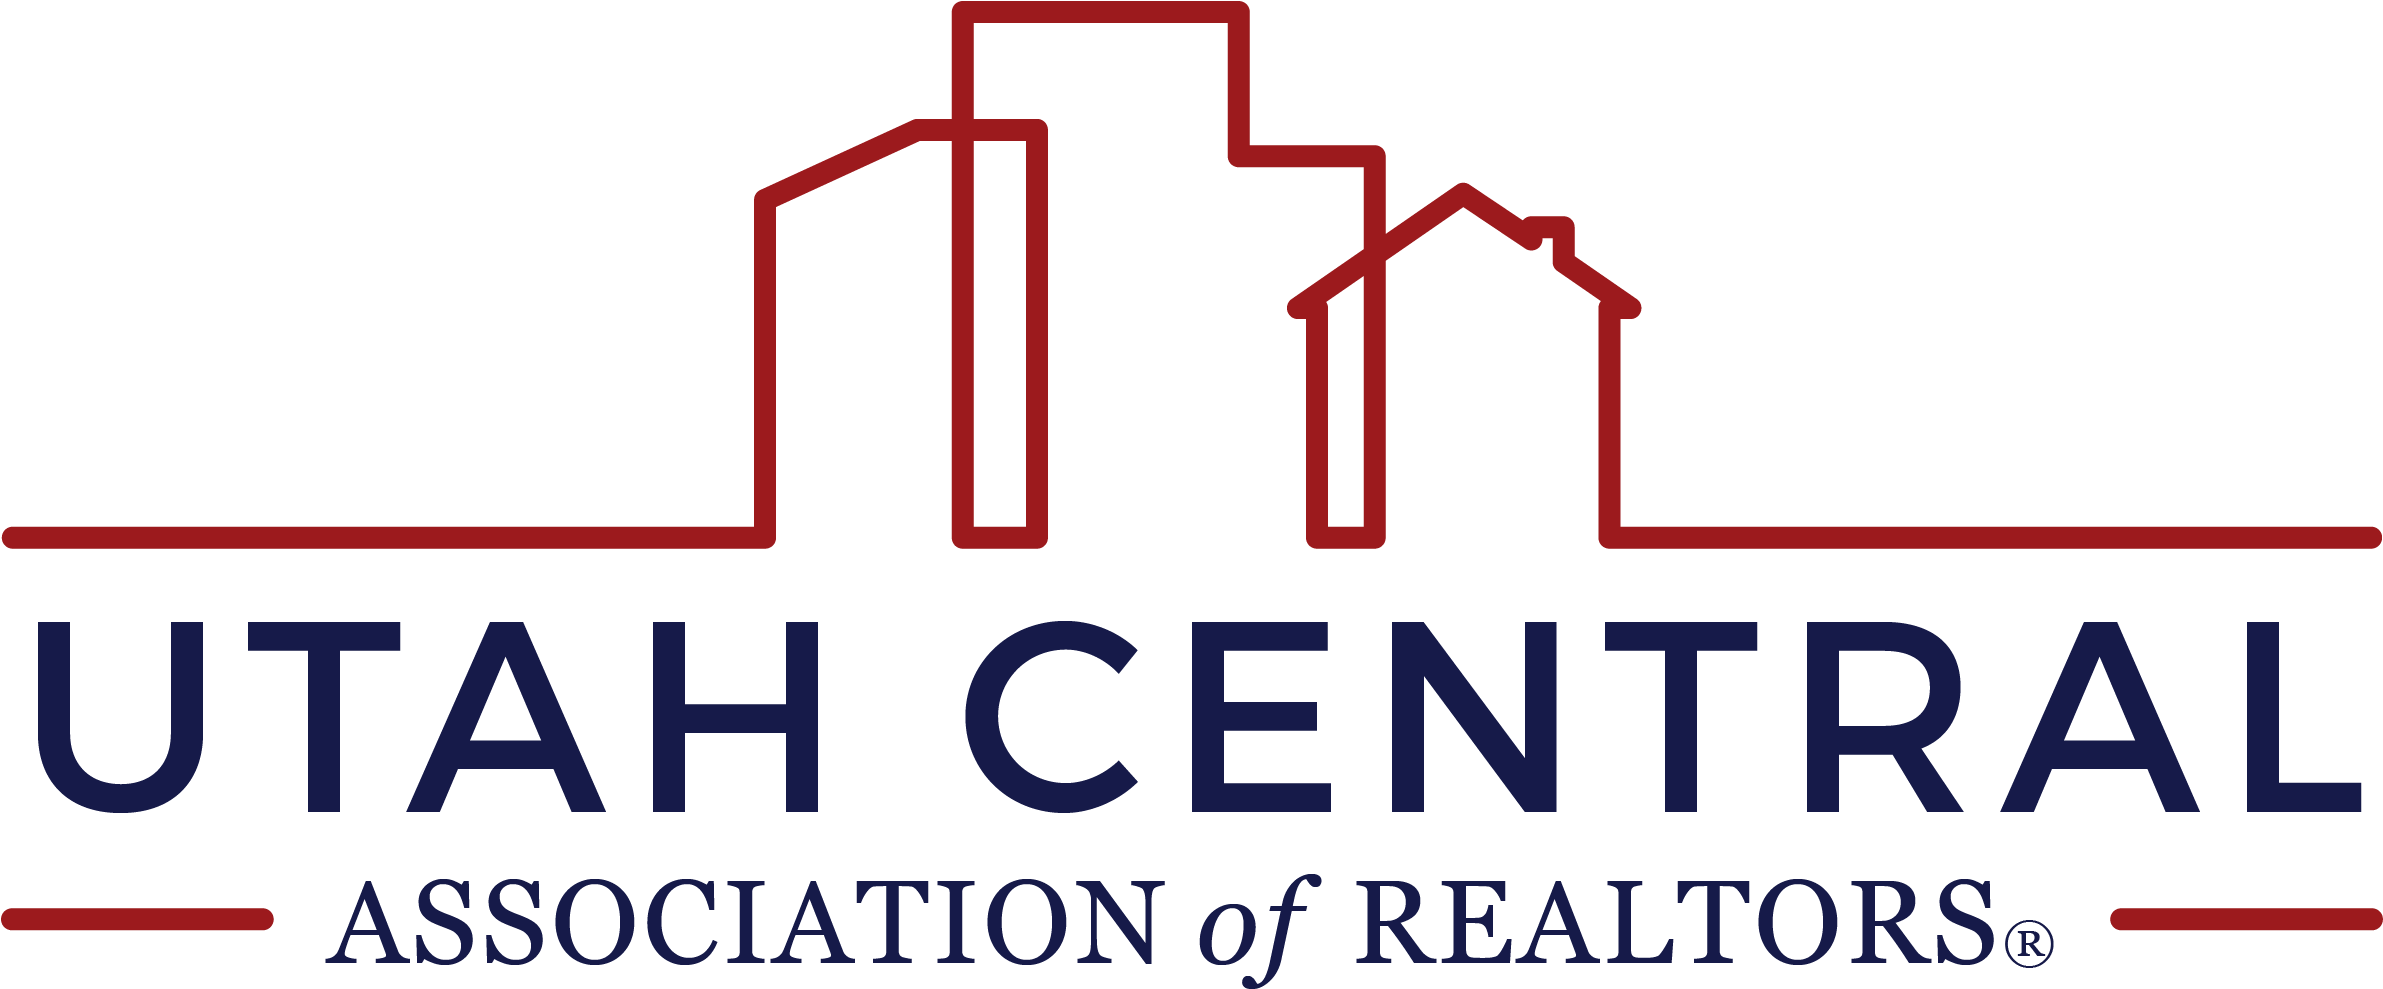 Utah Central Association Of Realtors (2388x997), Png Download